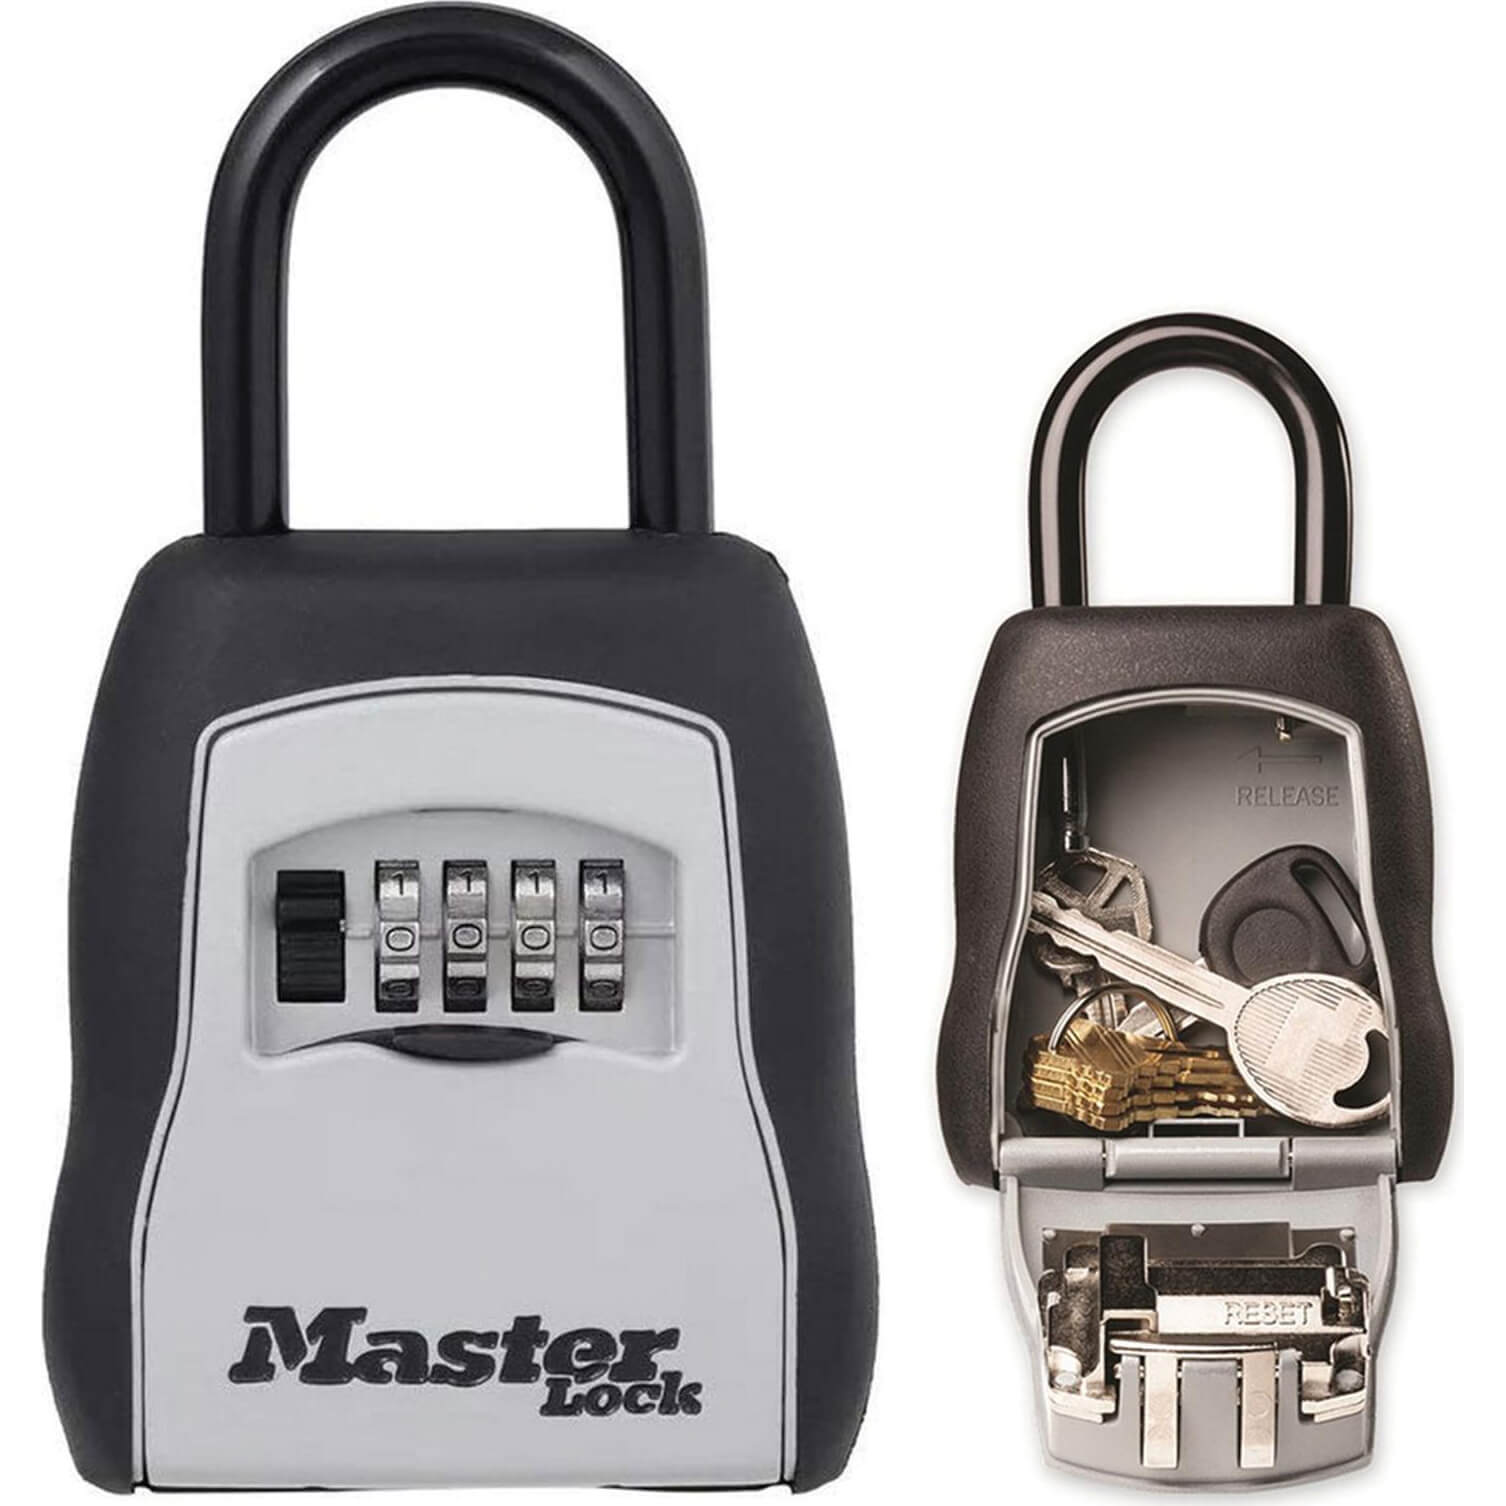 Image of Masterlock Portable Shackled Combination Key Safe